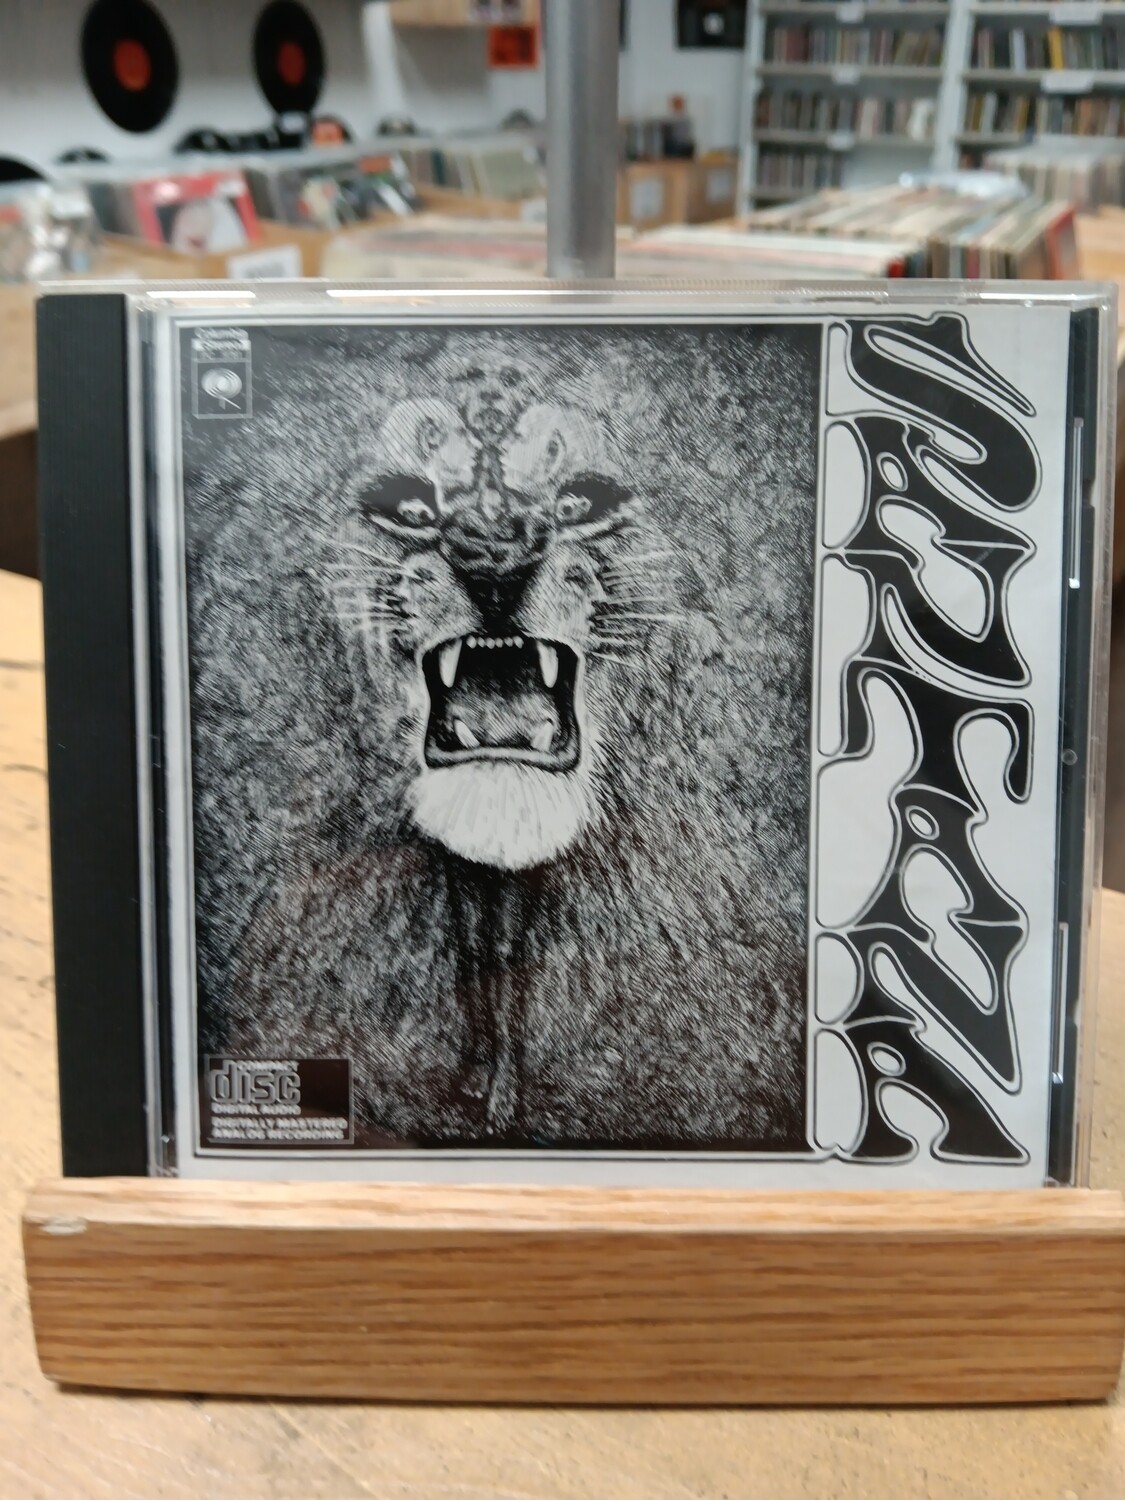 SANTANA - Santana (CD)